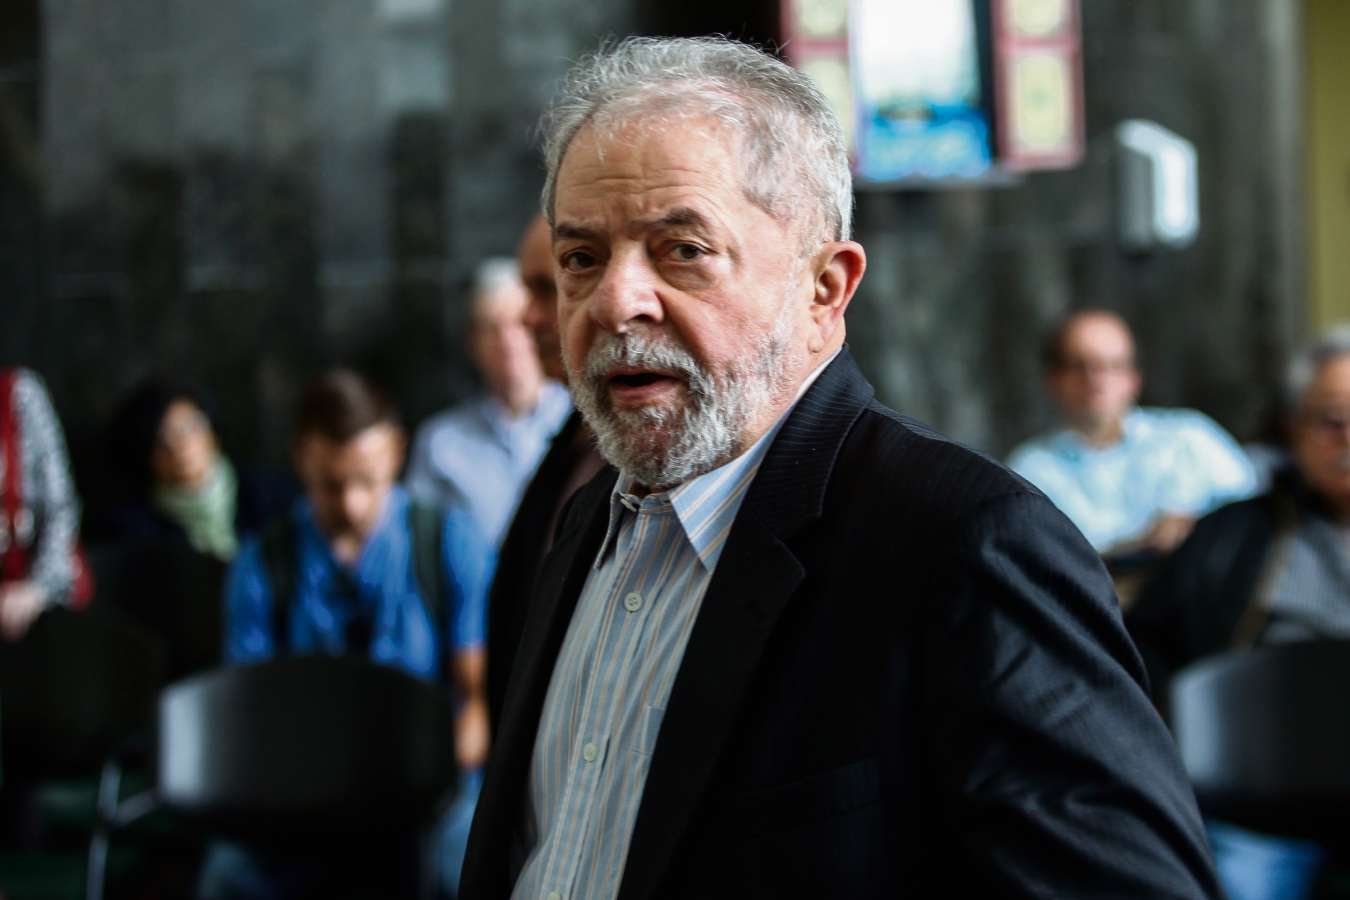 Lula e a esperada decisão final Ainda que seja grande a pressão das redes sociais em favor do encarceramento do ex-presidente Lula da Silva, é surpreendente verificar que a cada pesquisa de opinião pública ele aparece como forte candidato à Presidência da República.